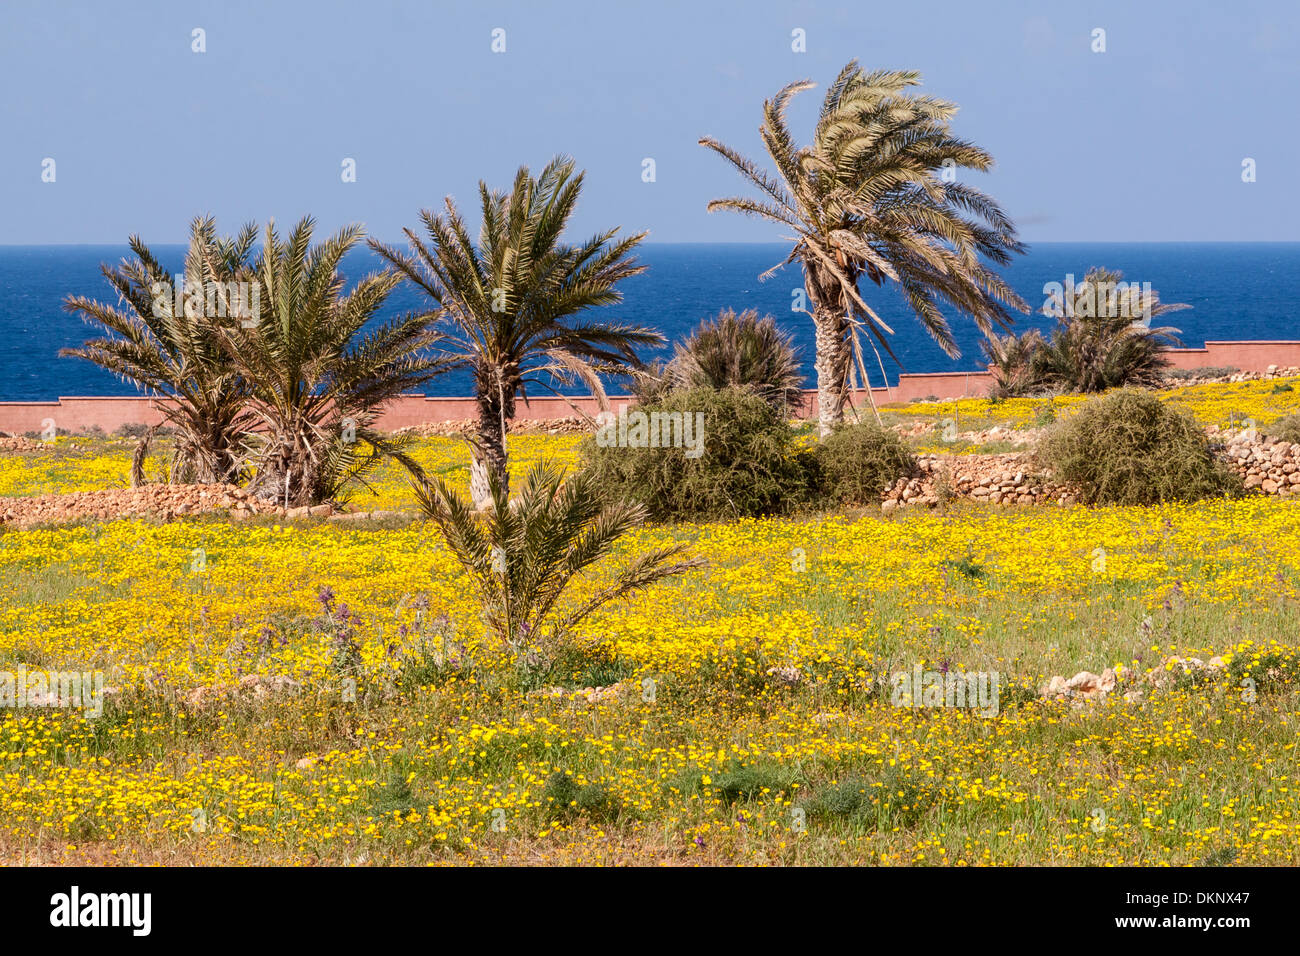 La Libye, L'arabe (Atrun : al-Atroun). Fleurs jaune ('aslous') au printemps. La mer Méditerranée en arrière-plan. Banque D'Images